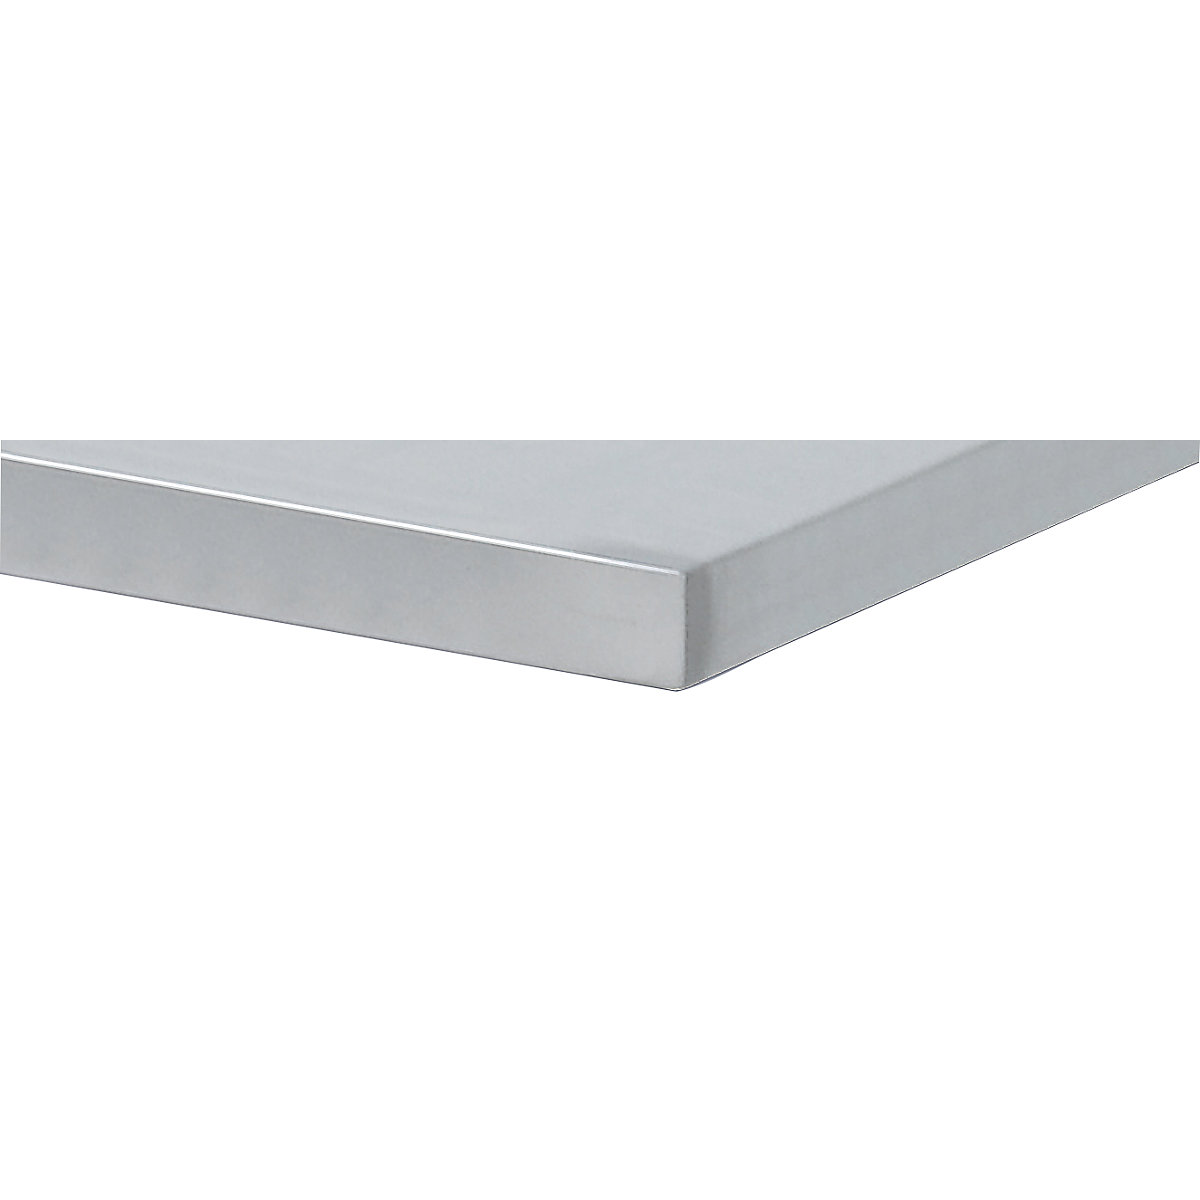 ANKE – Delovna miza širine 2800 mm, izvedba z ogrodjem (Slika izdelka 4)